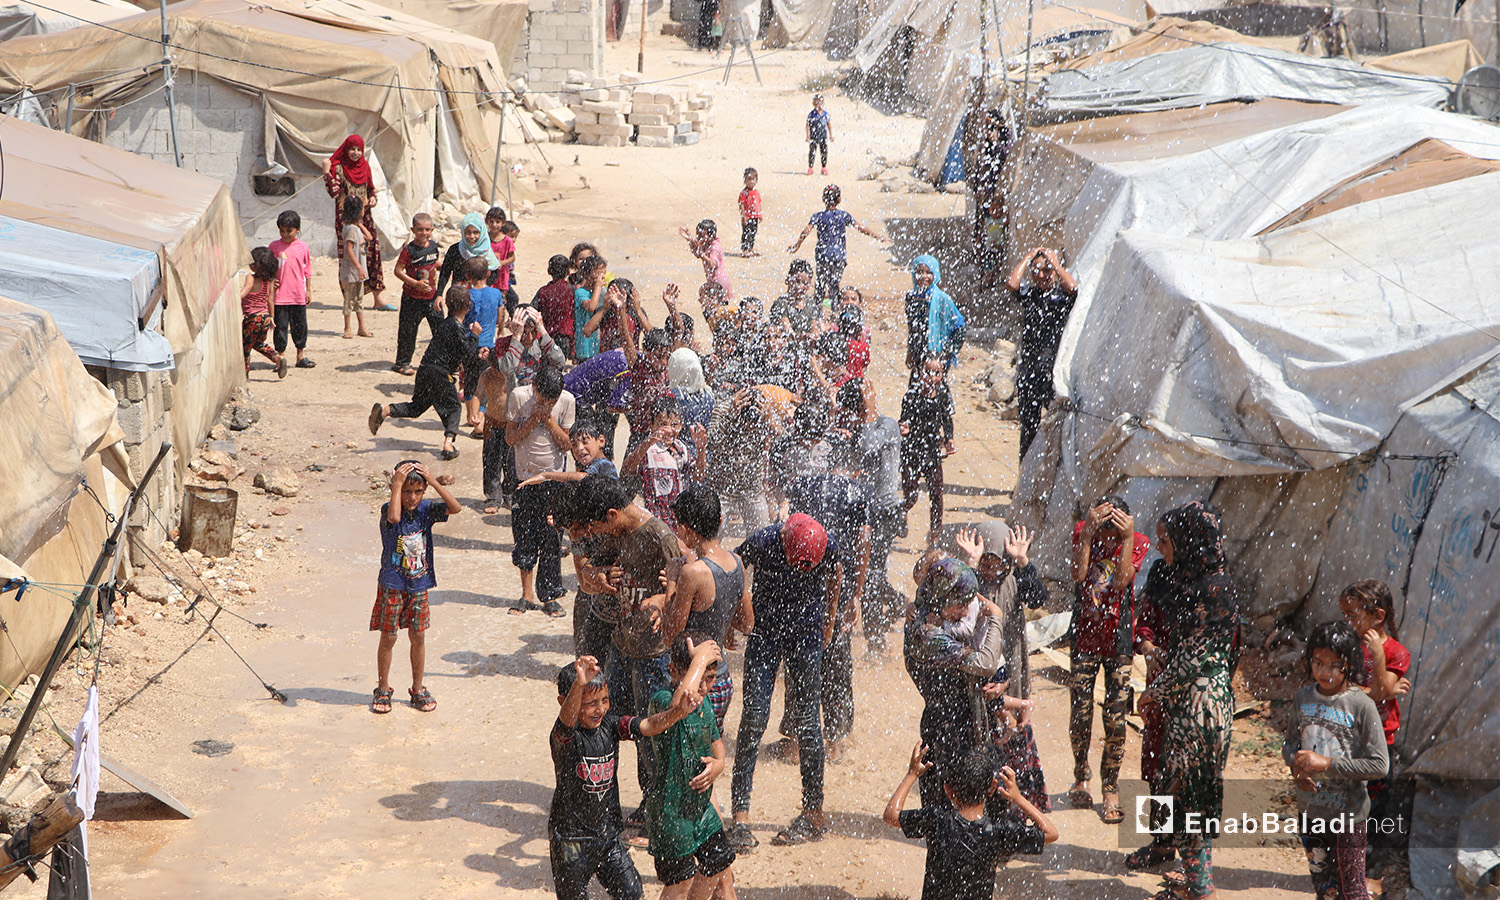 حملة للدفاع المدني لتخفيف الحر عن سكان الخيم بمخيم الشرقية في الباب بريف حلب - 5 أيلول 2020 (عنب بلدي/ عاصم الملحم)